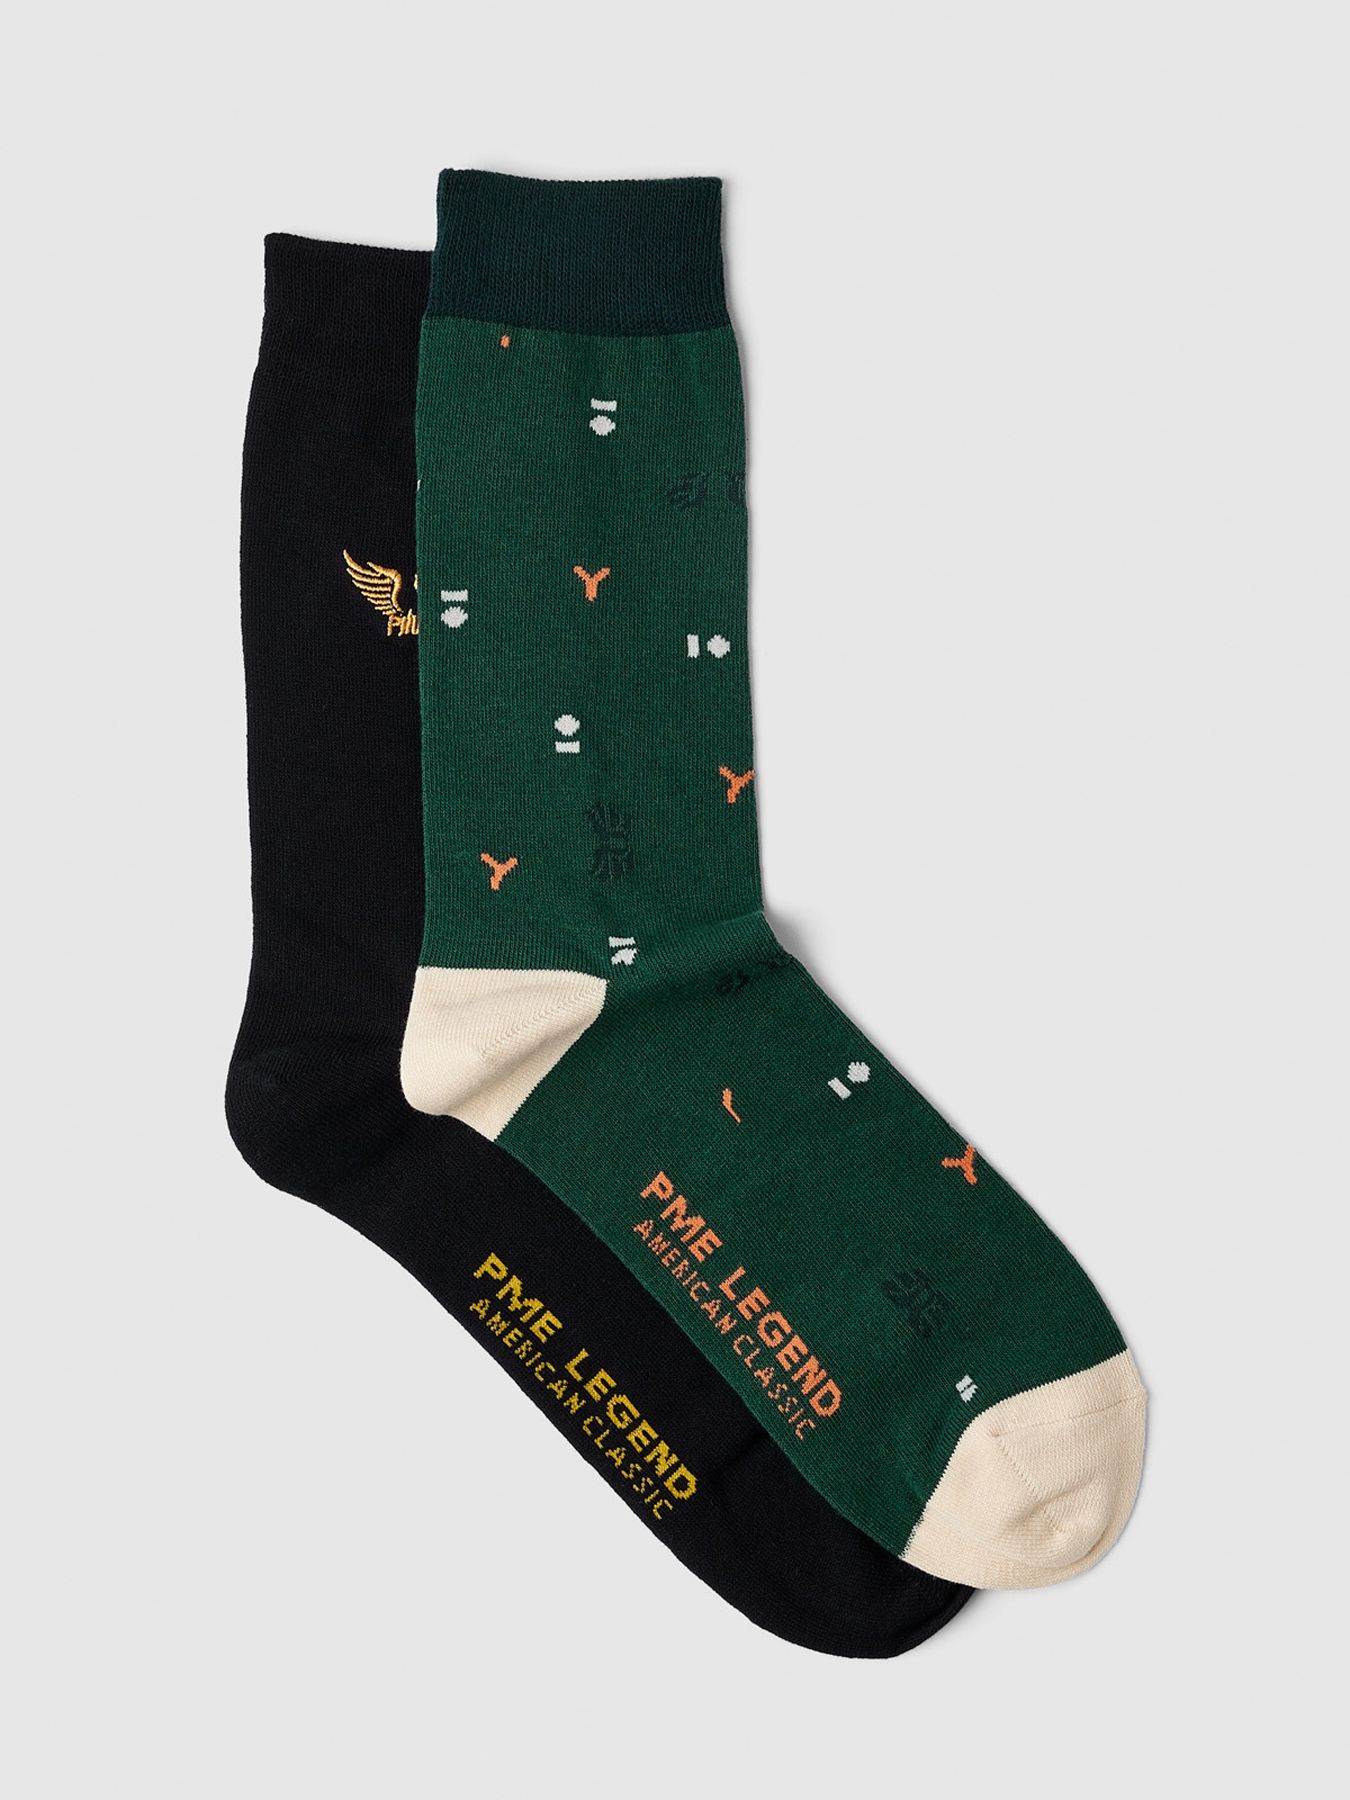 Pme Legend Socks Cotton blend socks 2-pack Jasper 00105123-6082